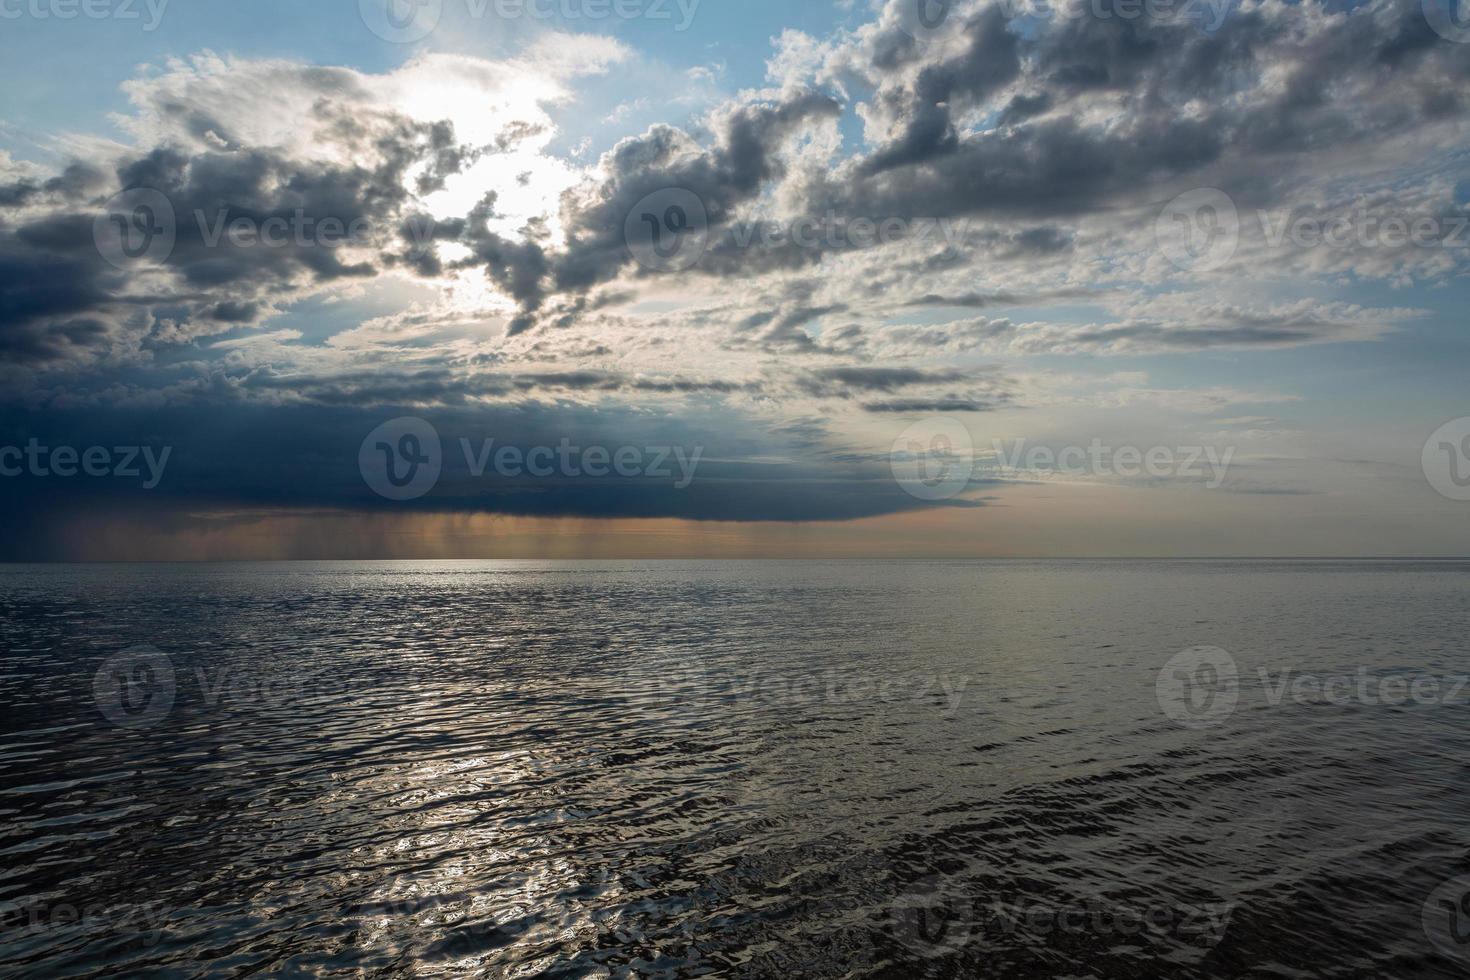 baltico mare costa a tramonto foto